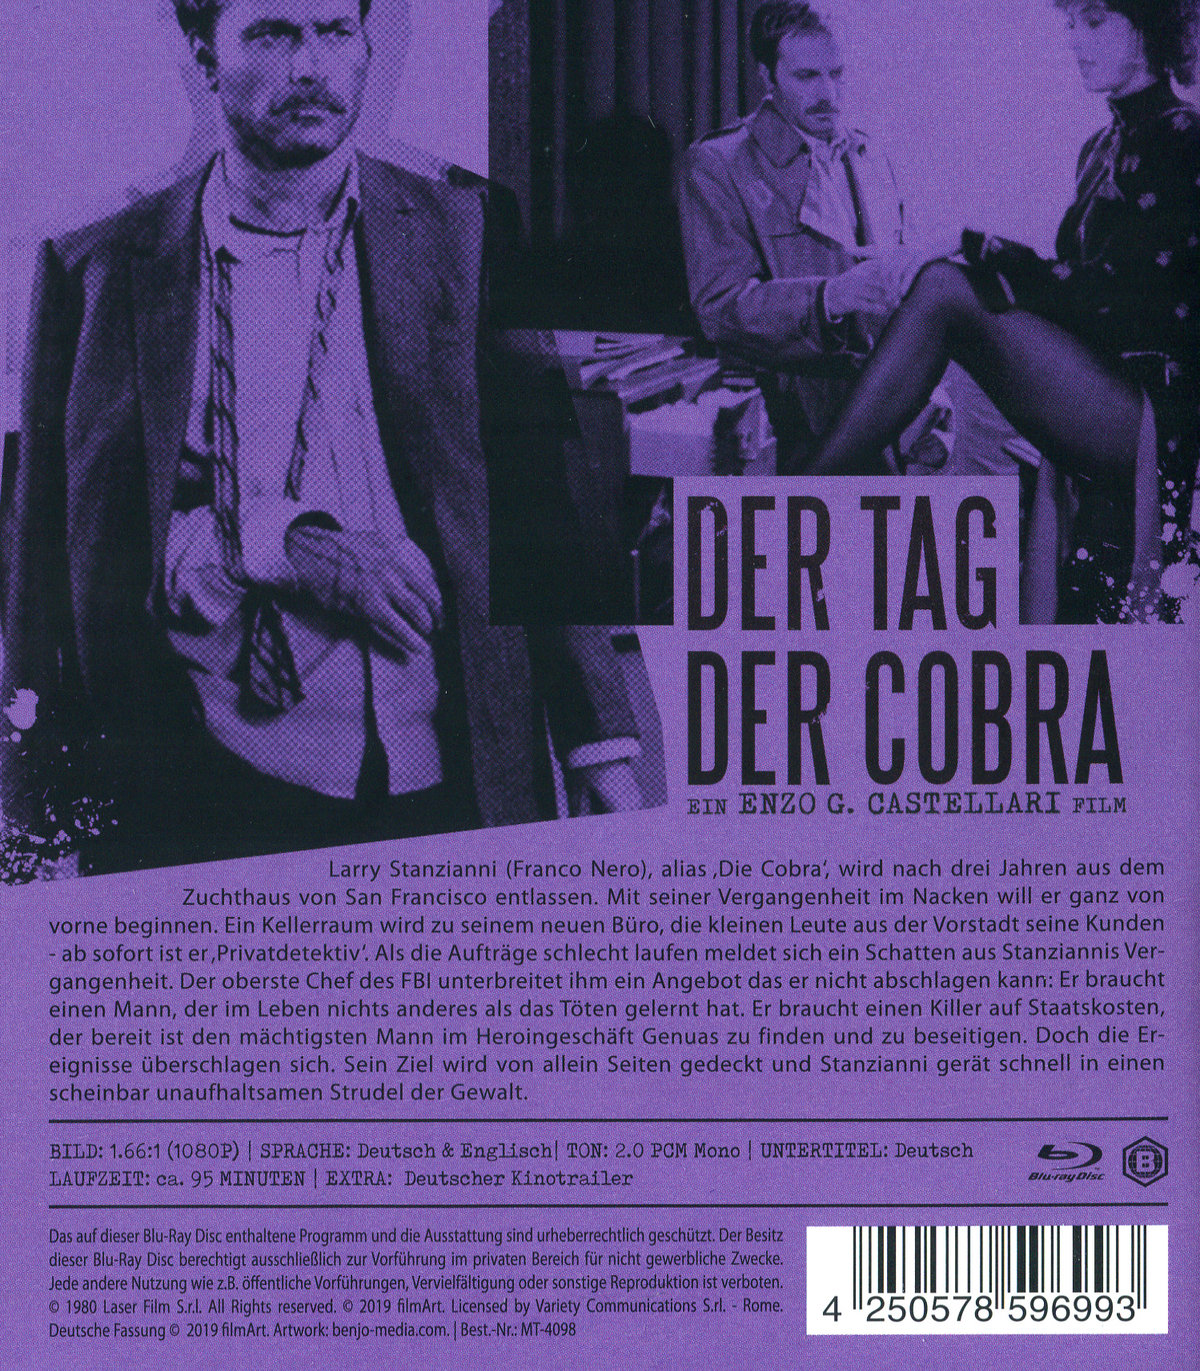 Tag der Cobra, Der - Uncut Edition (blu-ray)